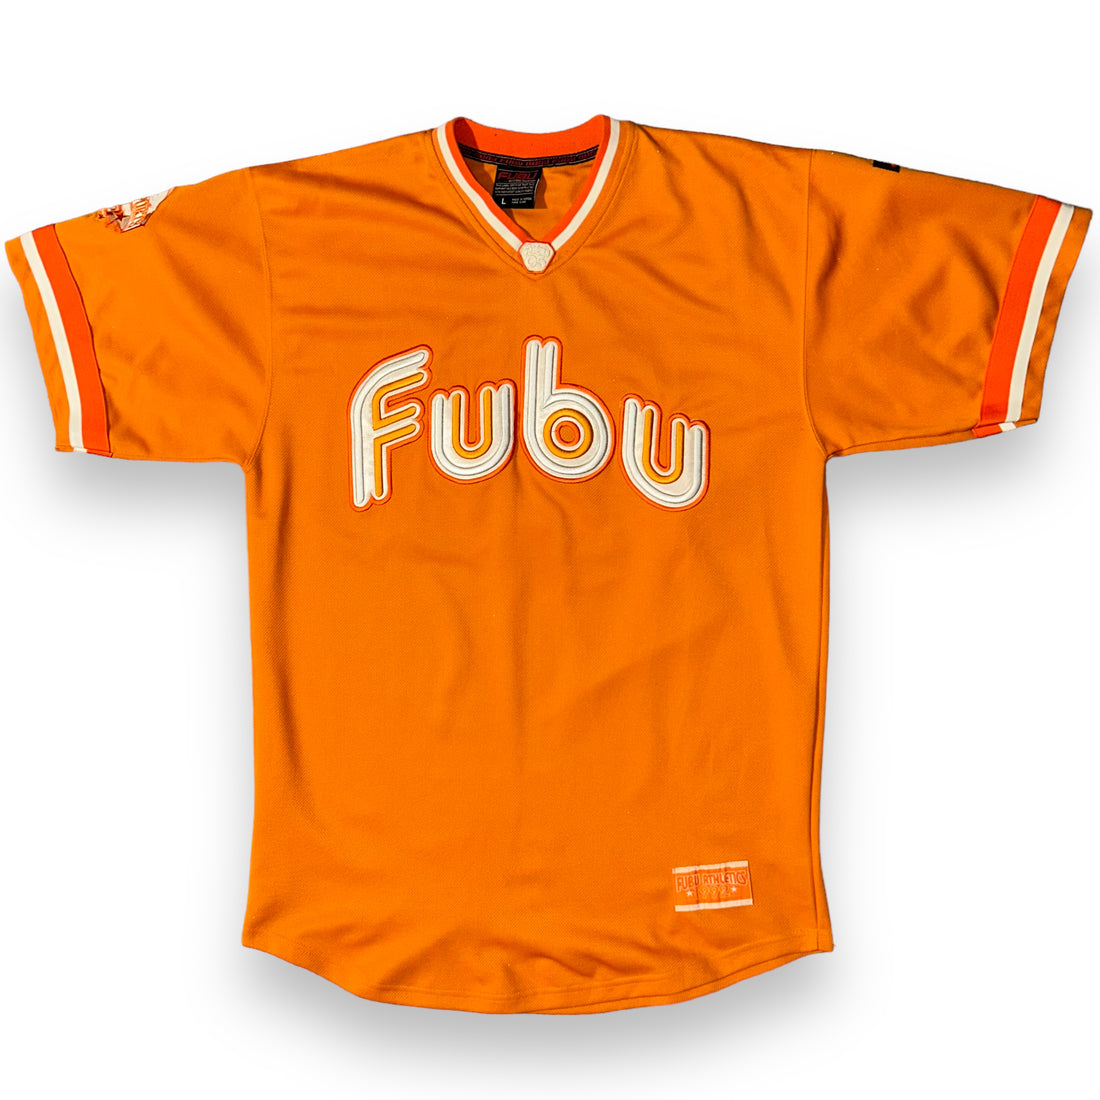 Jersey FUBU Vintage (XL)